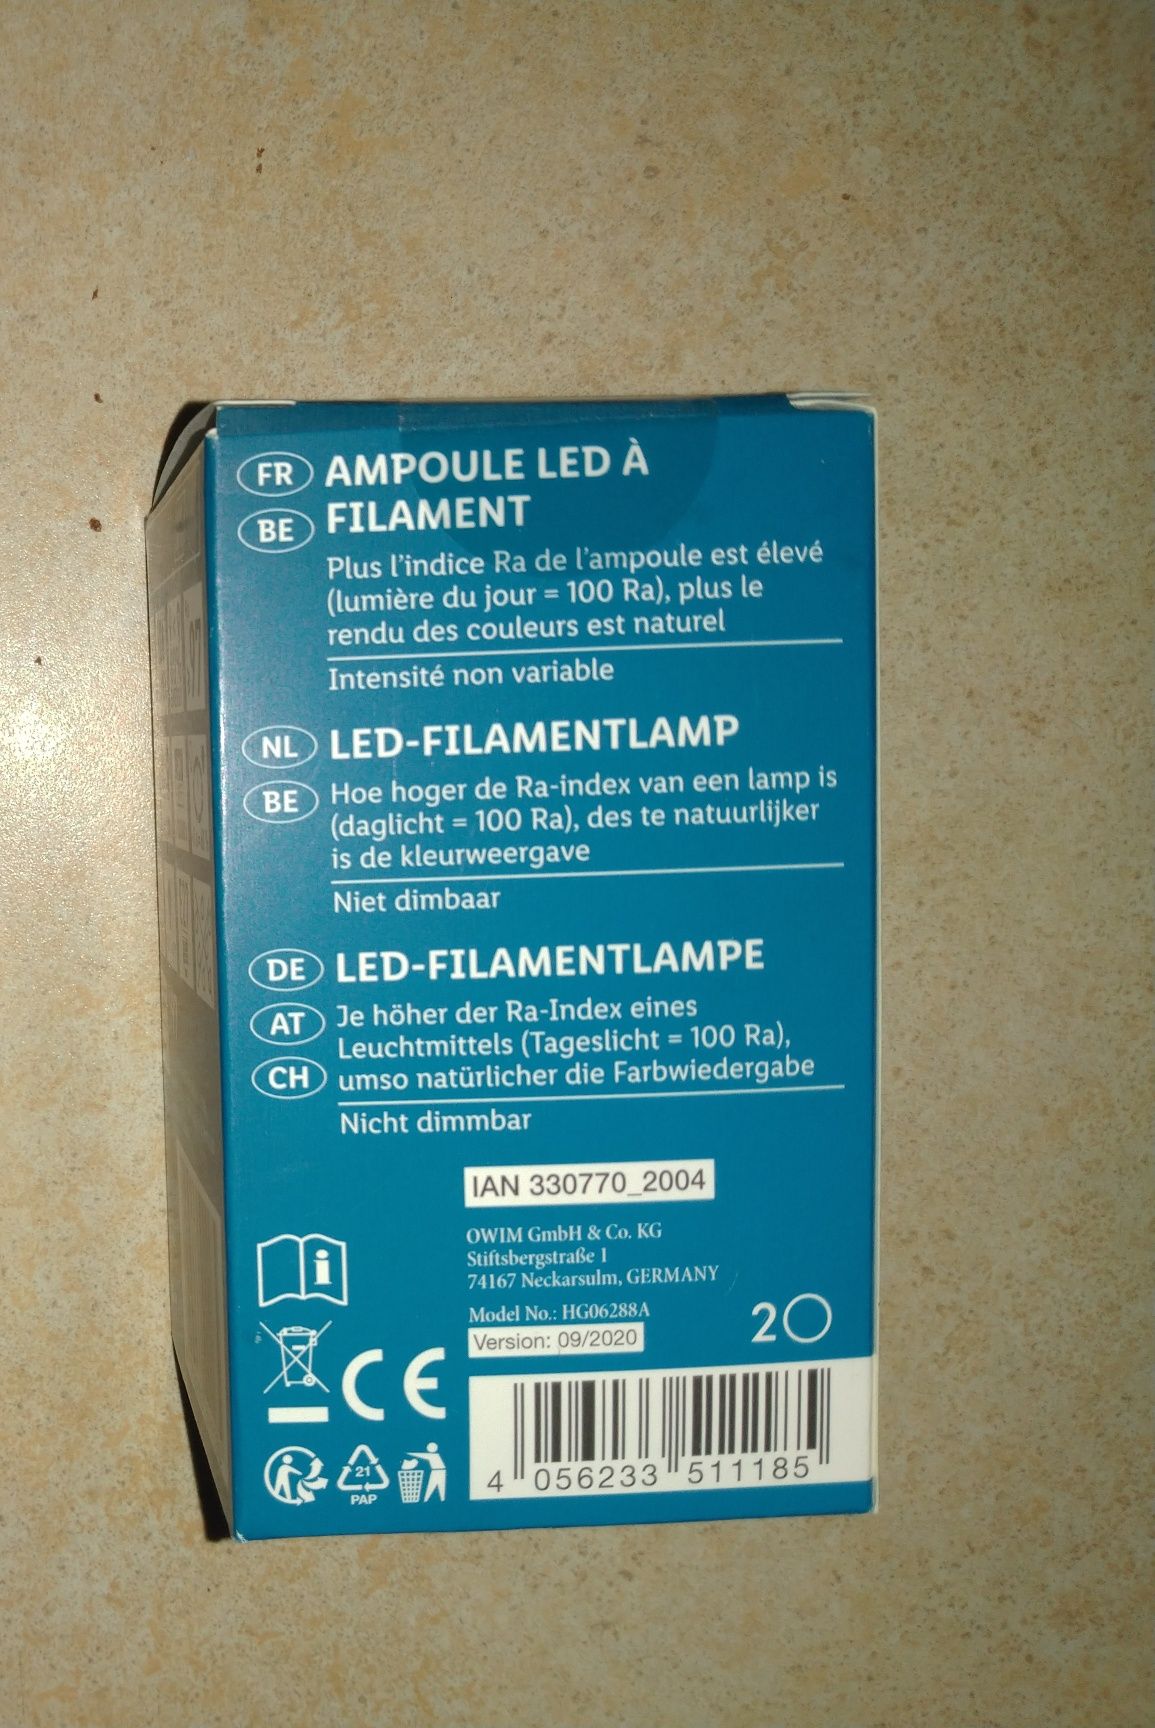 Світлодіодна Лампа 8Bт=60 Вт. LIVARNO. Лампочка